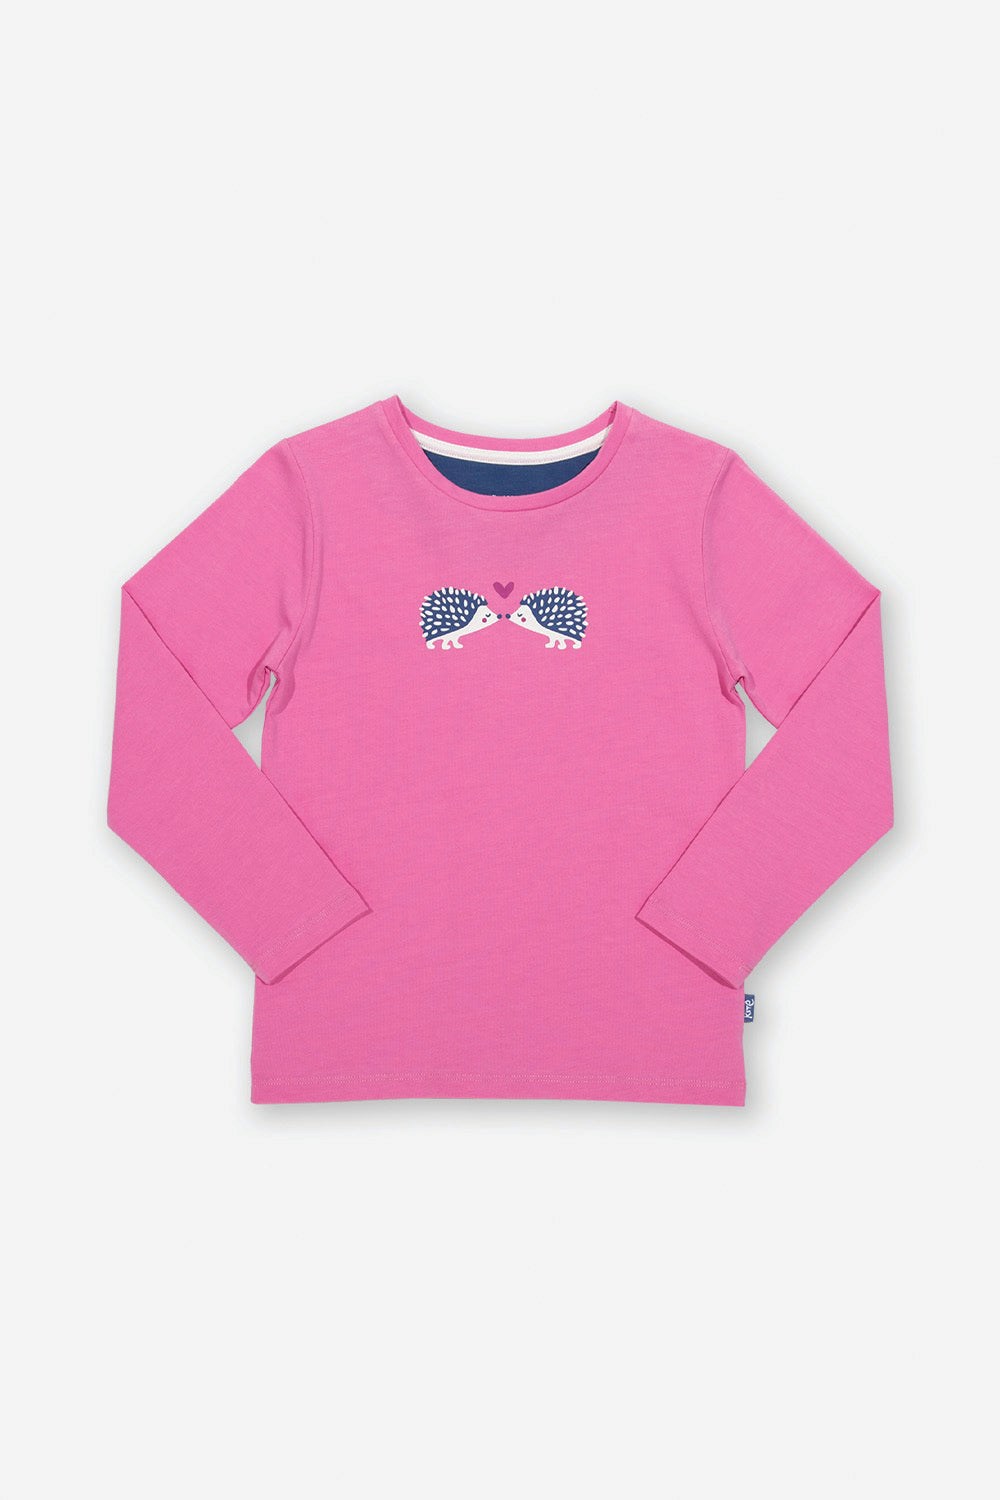 Kids Hedgehog Heart T-Shirt -